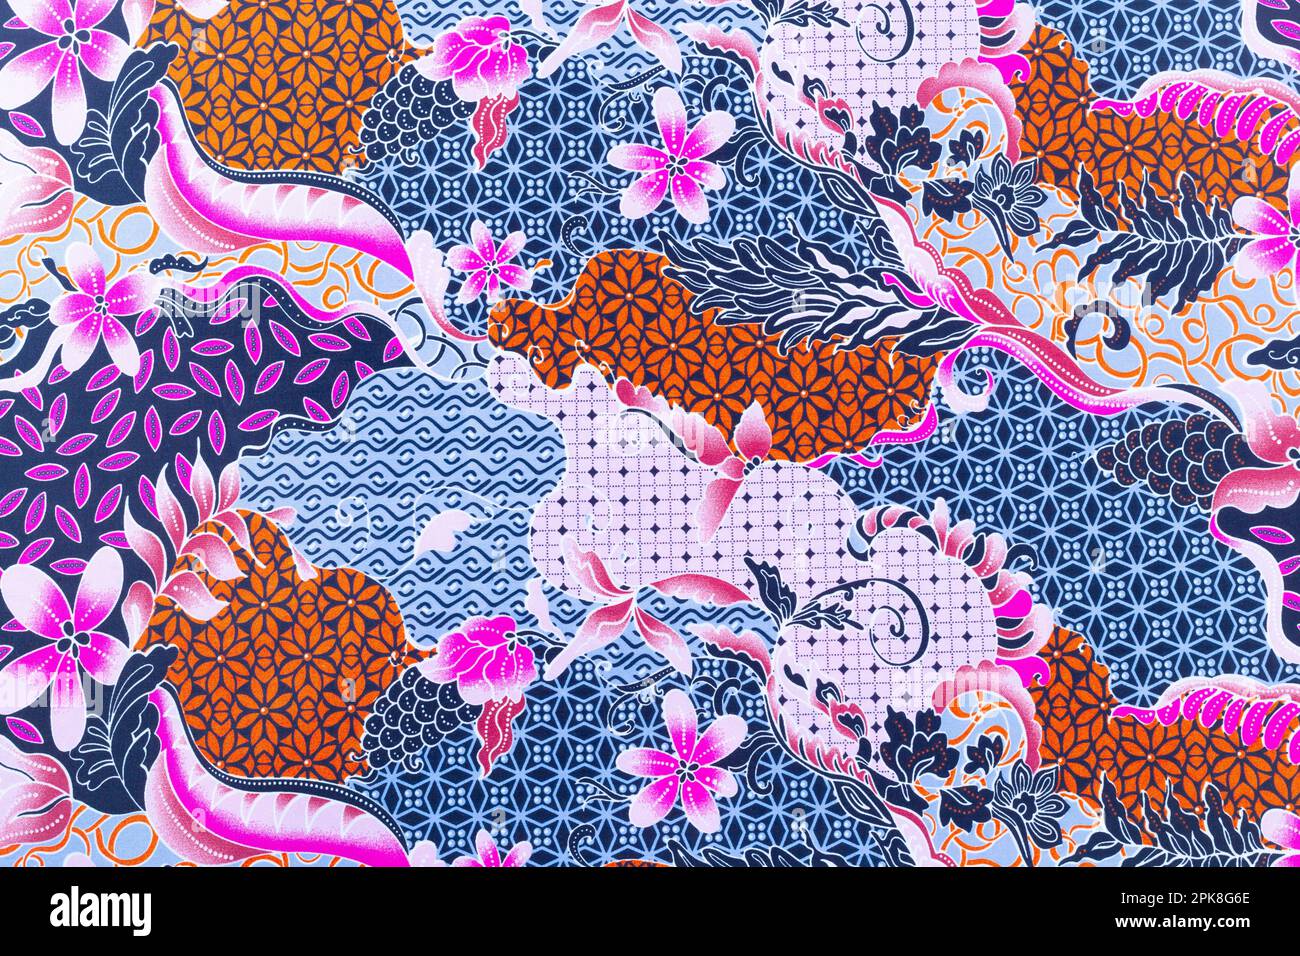 Phuket Thailand 2016 Batik Fabric Most Stock Photo 539112445